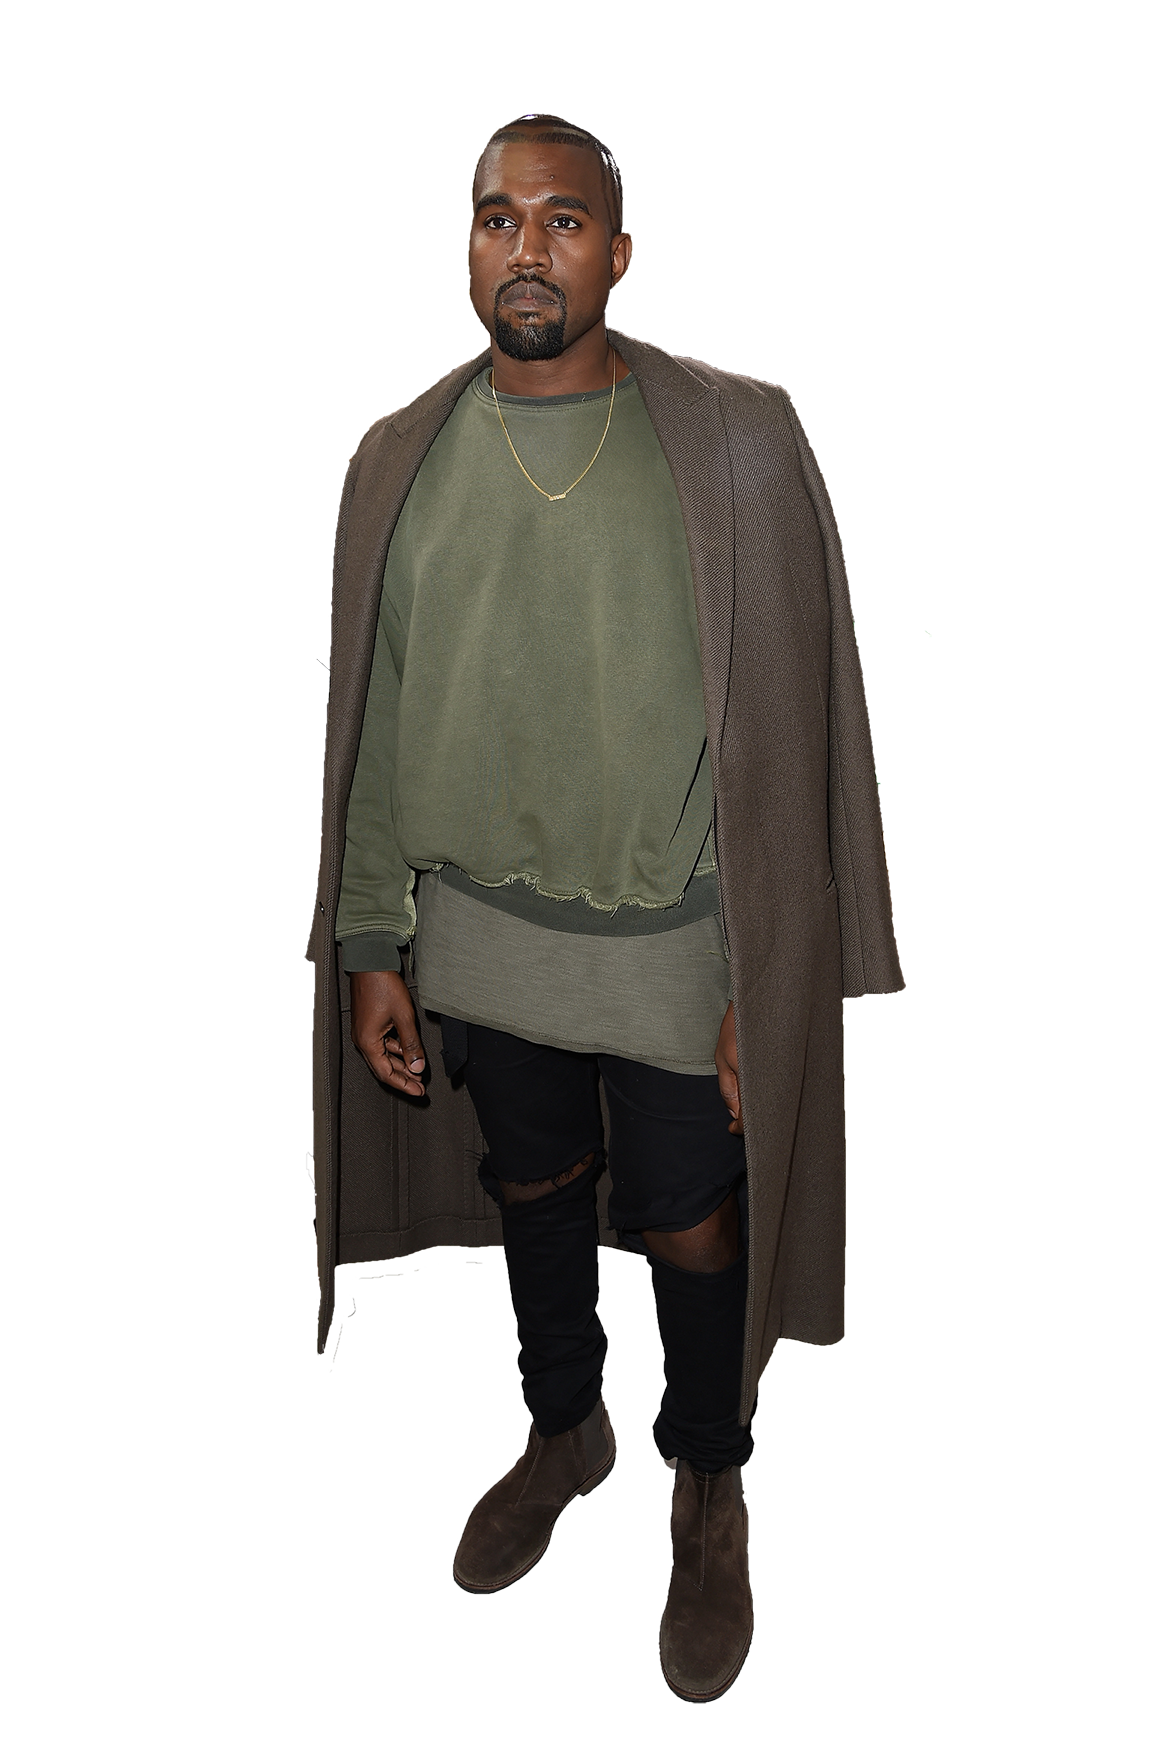 Rapper Kanye West PNG imagem transparente